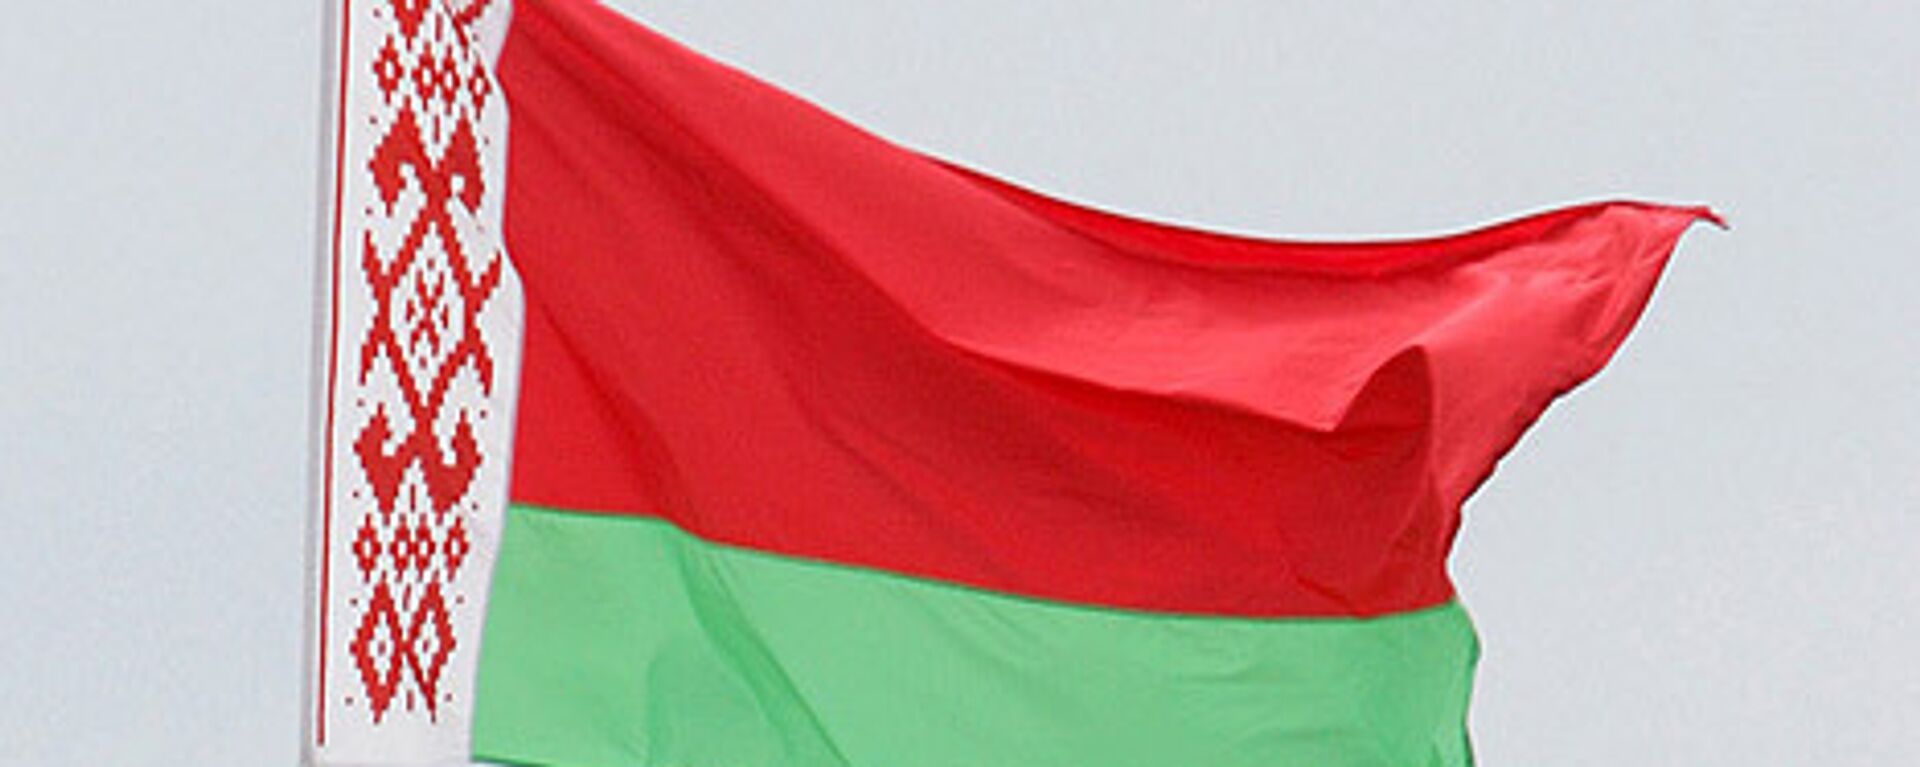 Belarus flag - Sputnik International, 1920